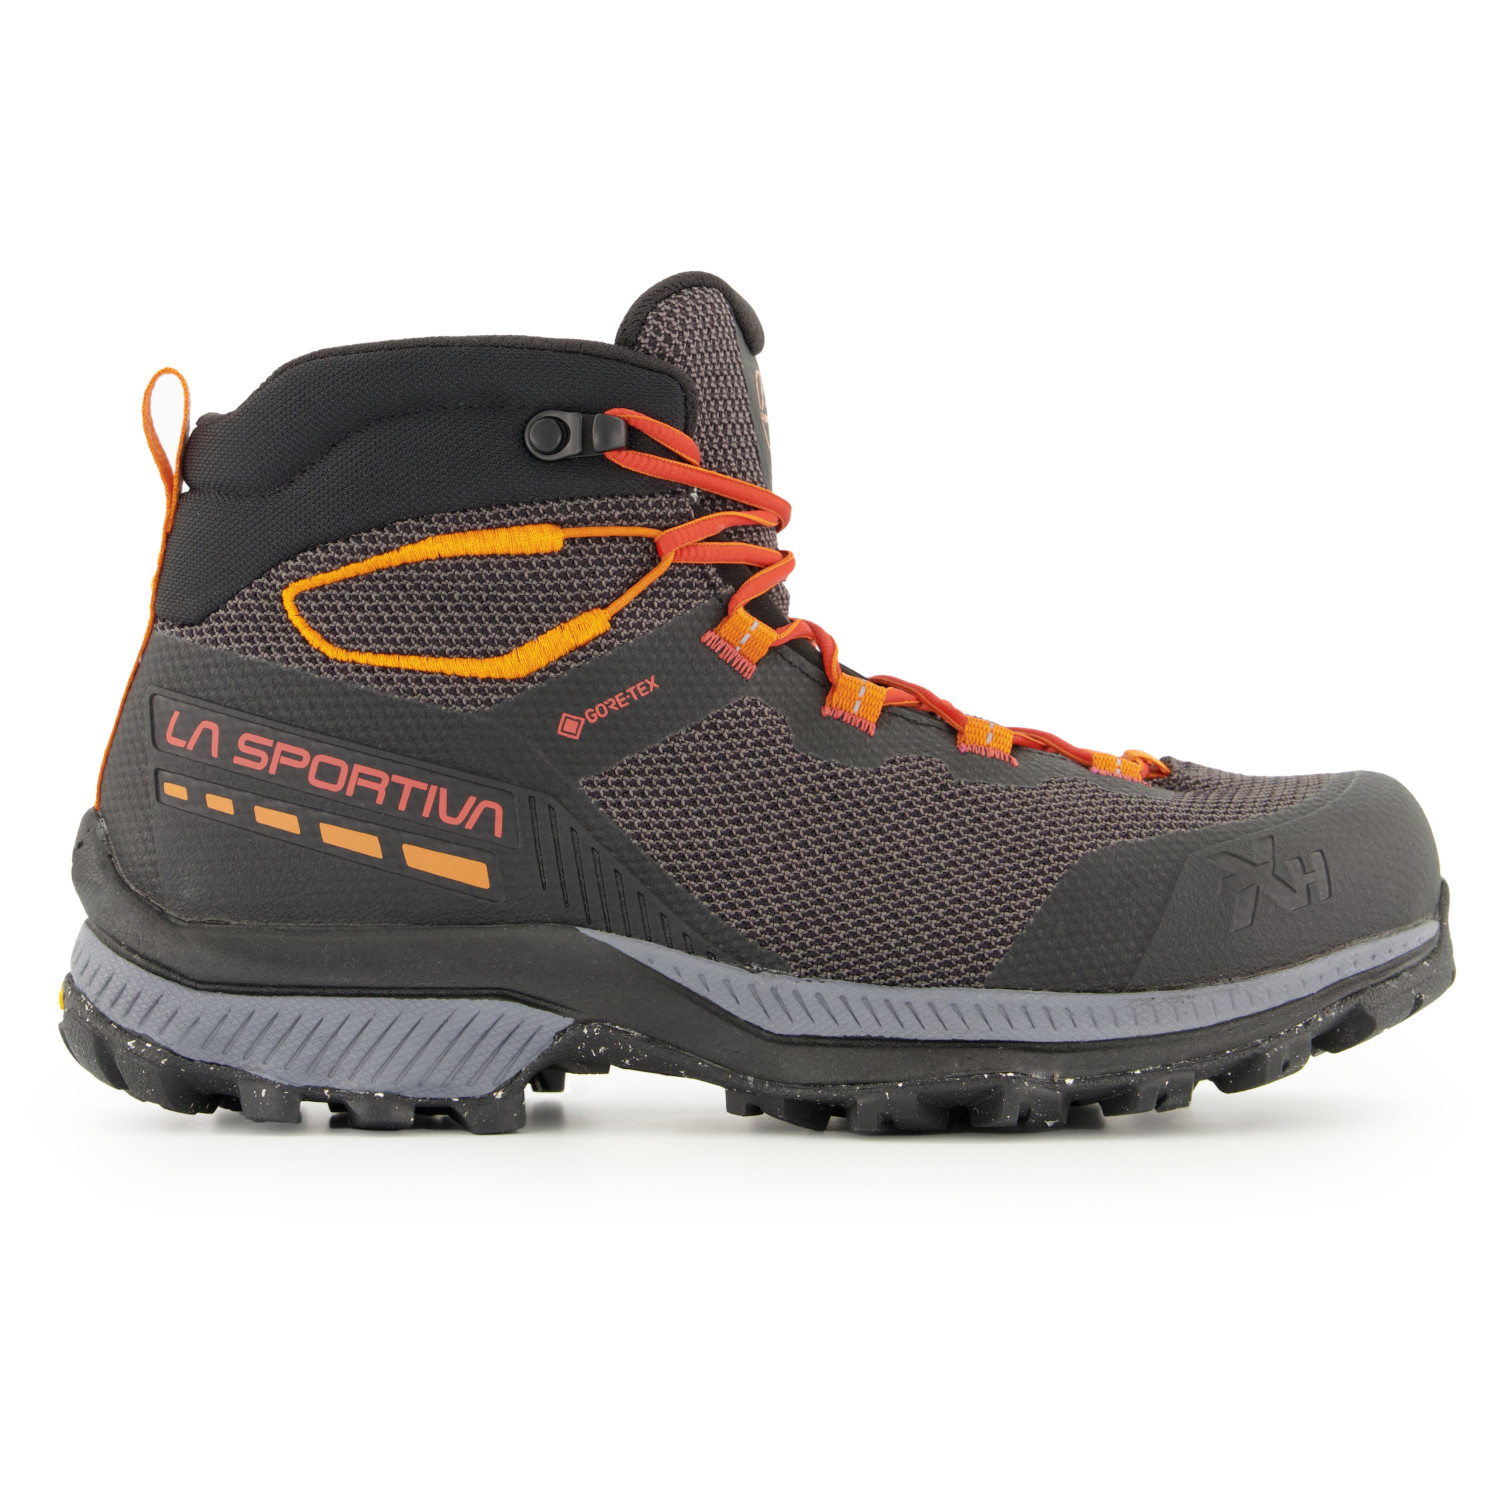 Ботинки для прогулки La Sportiva TX Hike Mid GTX, цвет Carbon/Saffron обувь tx canyon мужская la sportiva черный желтый